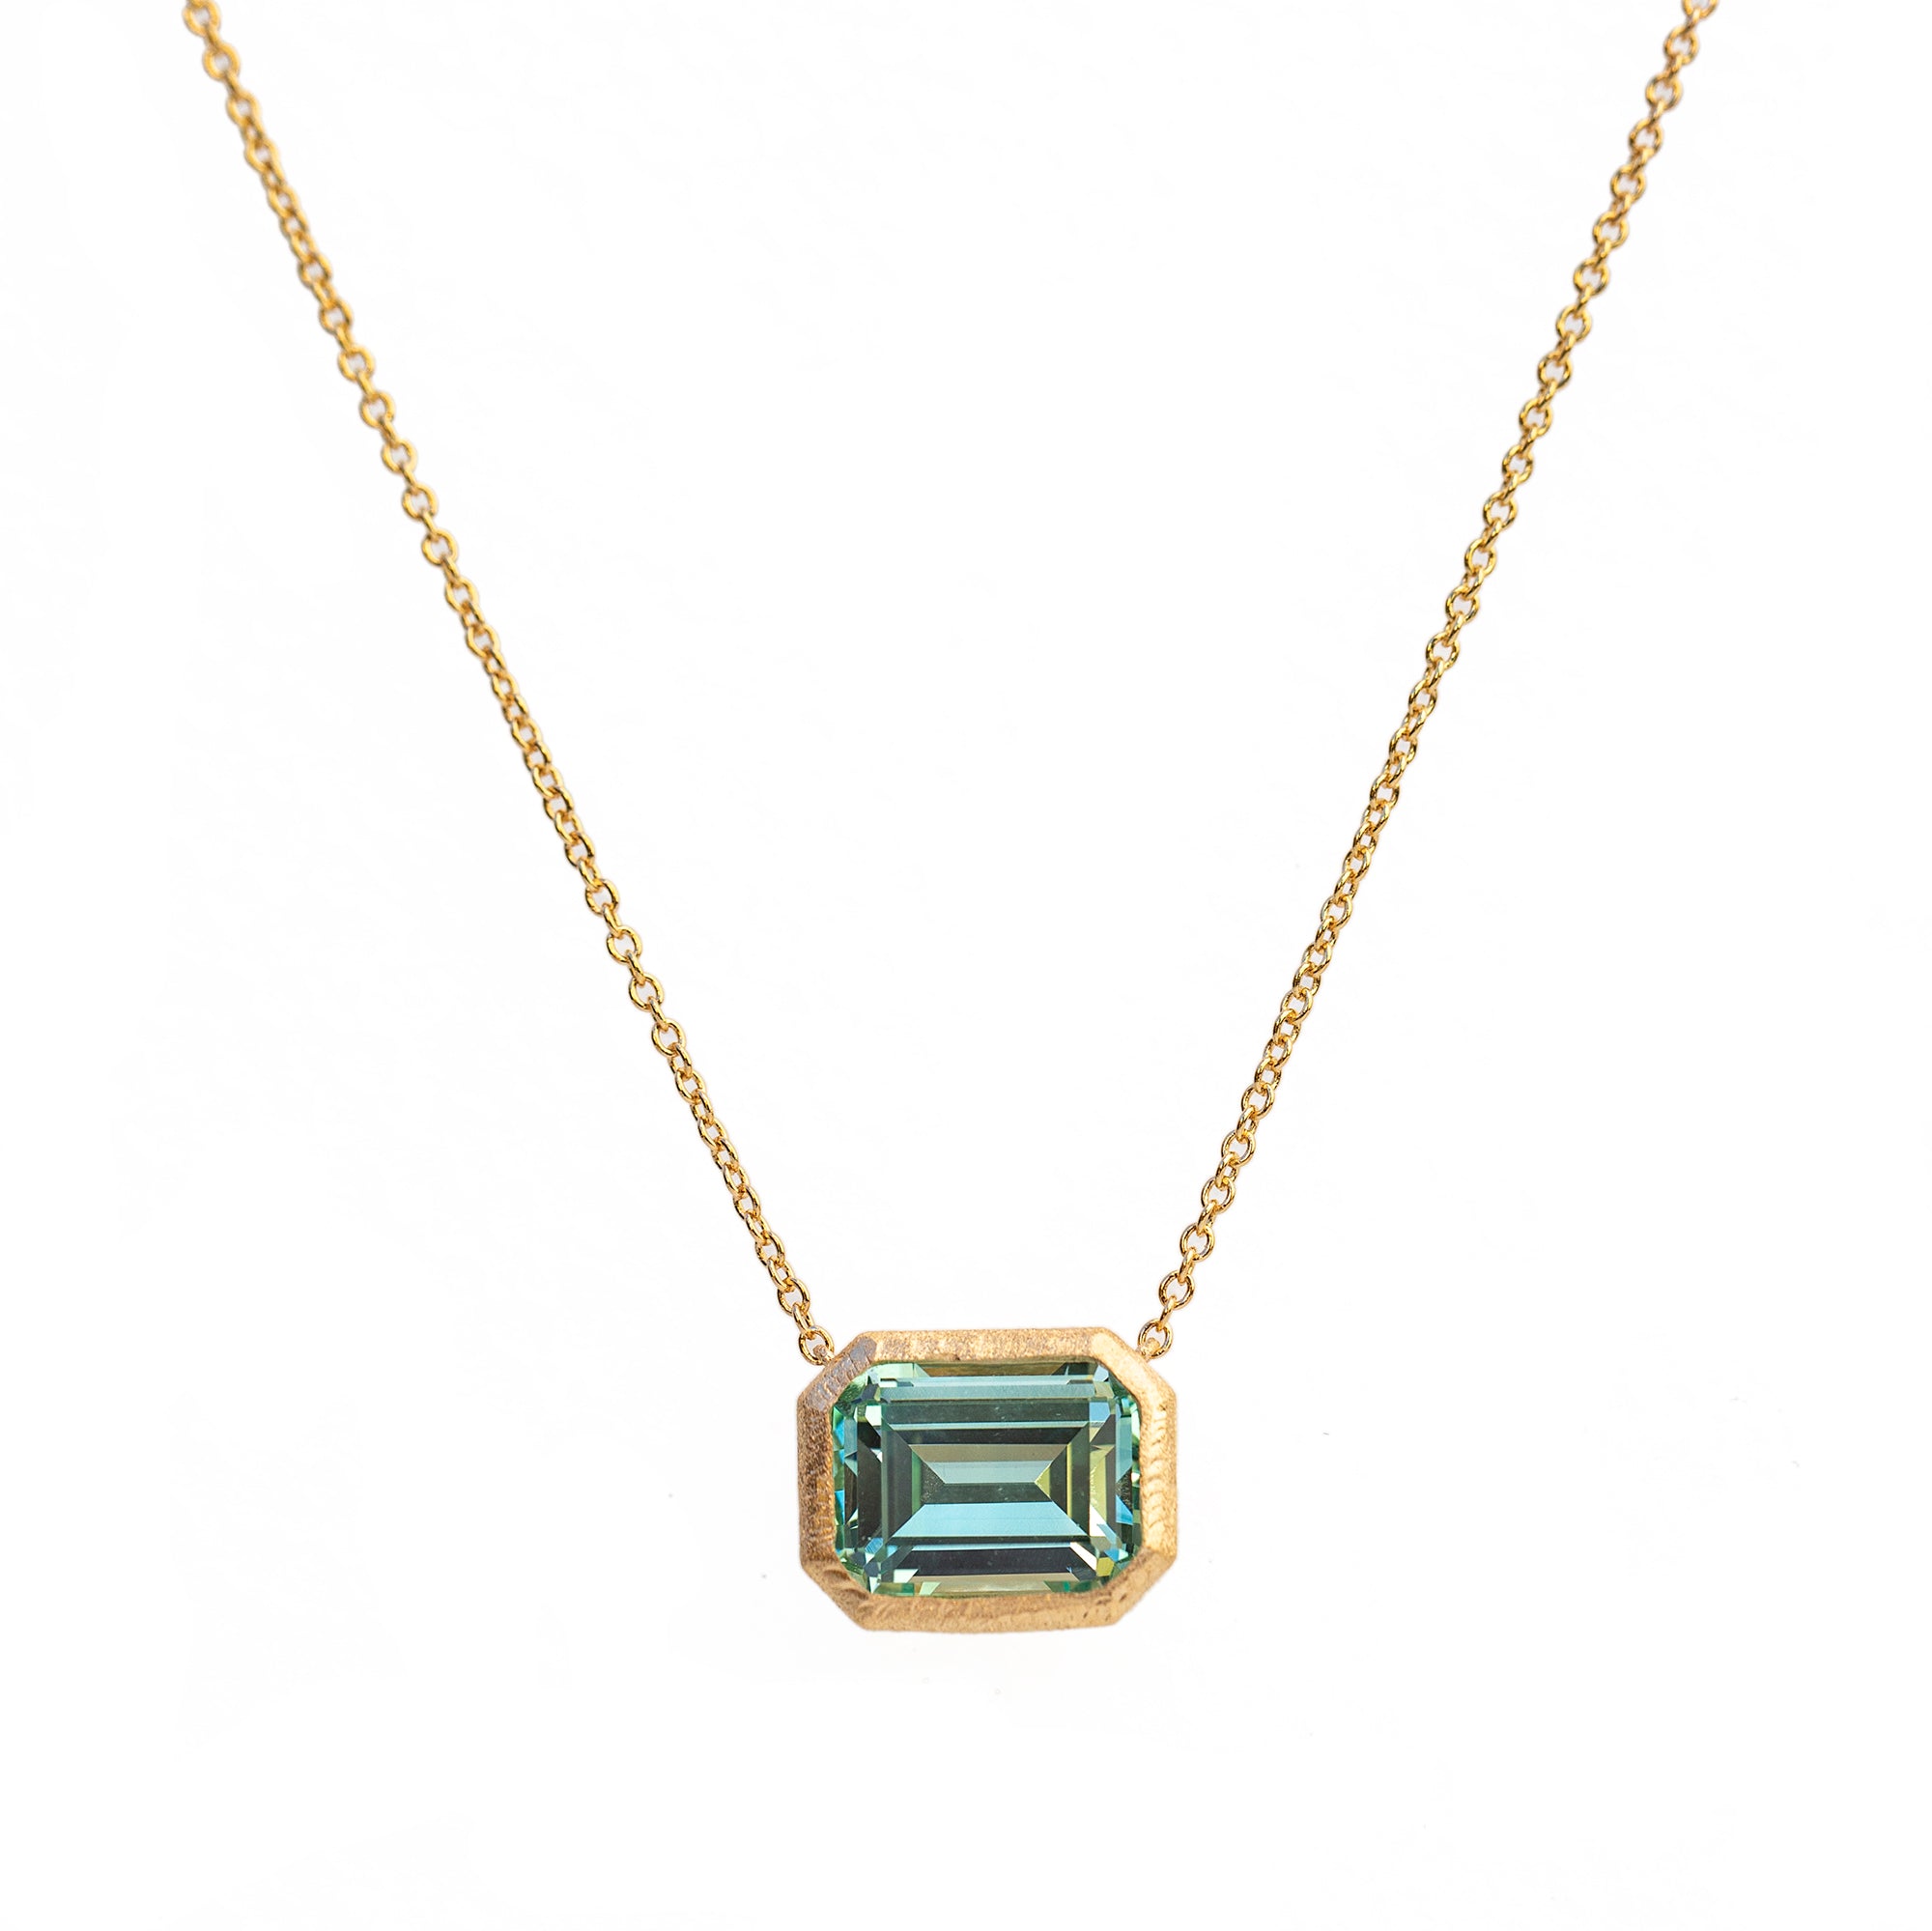 Emerald Cut Bezel Necklace – Loren Stewart